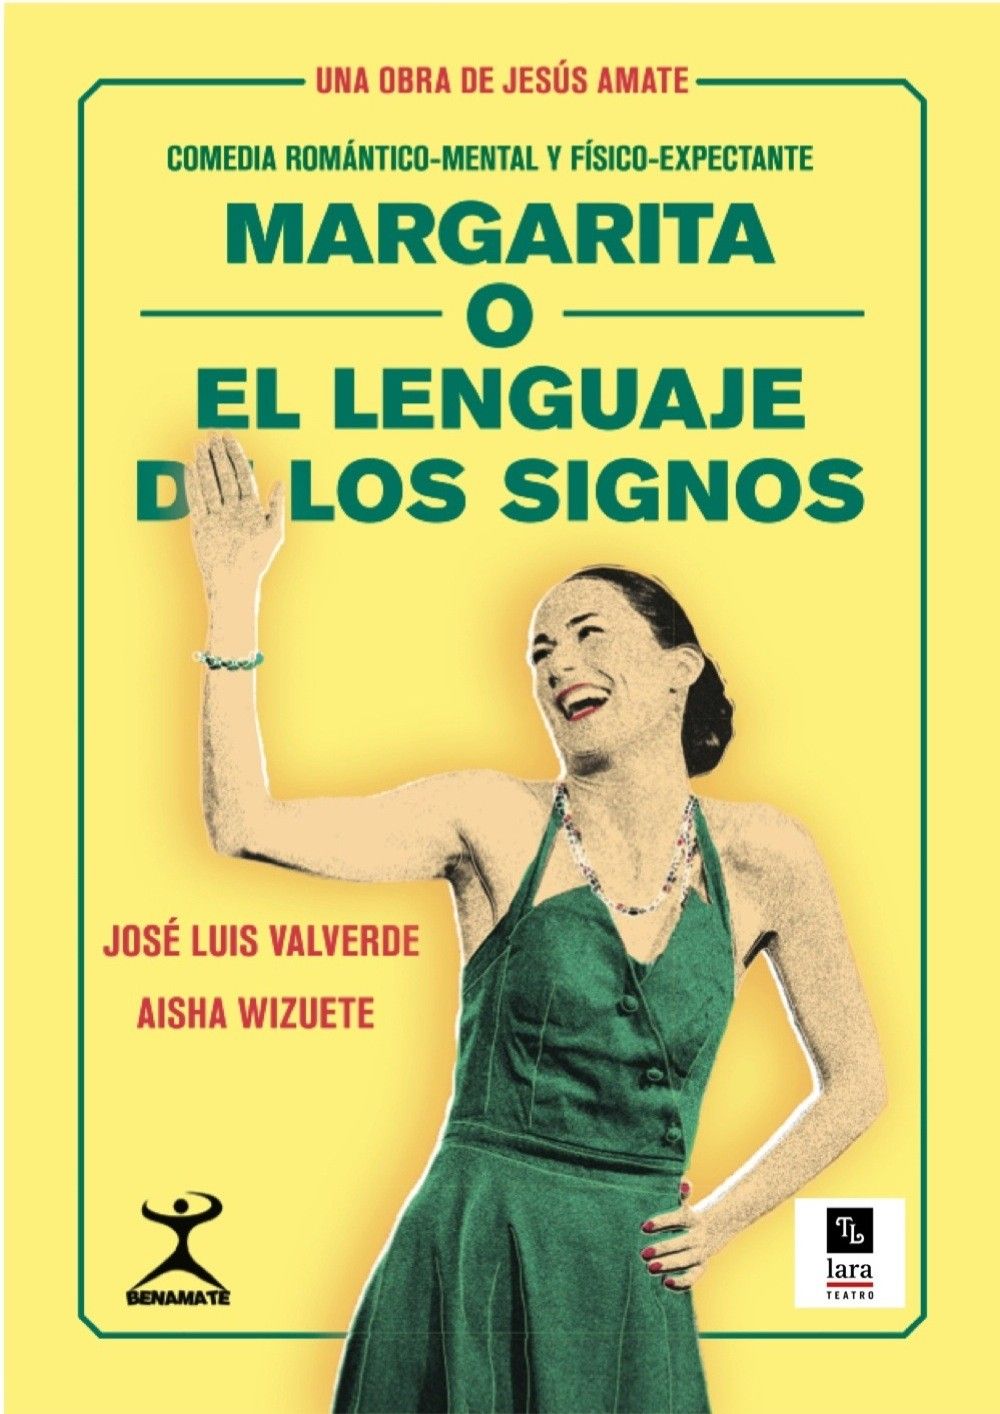 MARGARITA, O EL LENGUAJE DE LOS SIGNOS, en el Teatro Lara